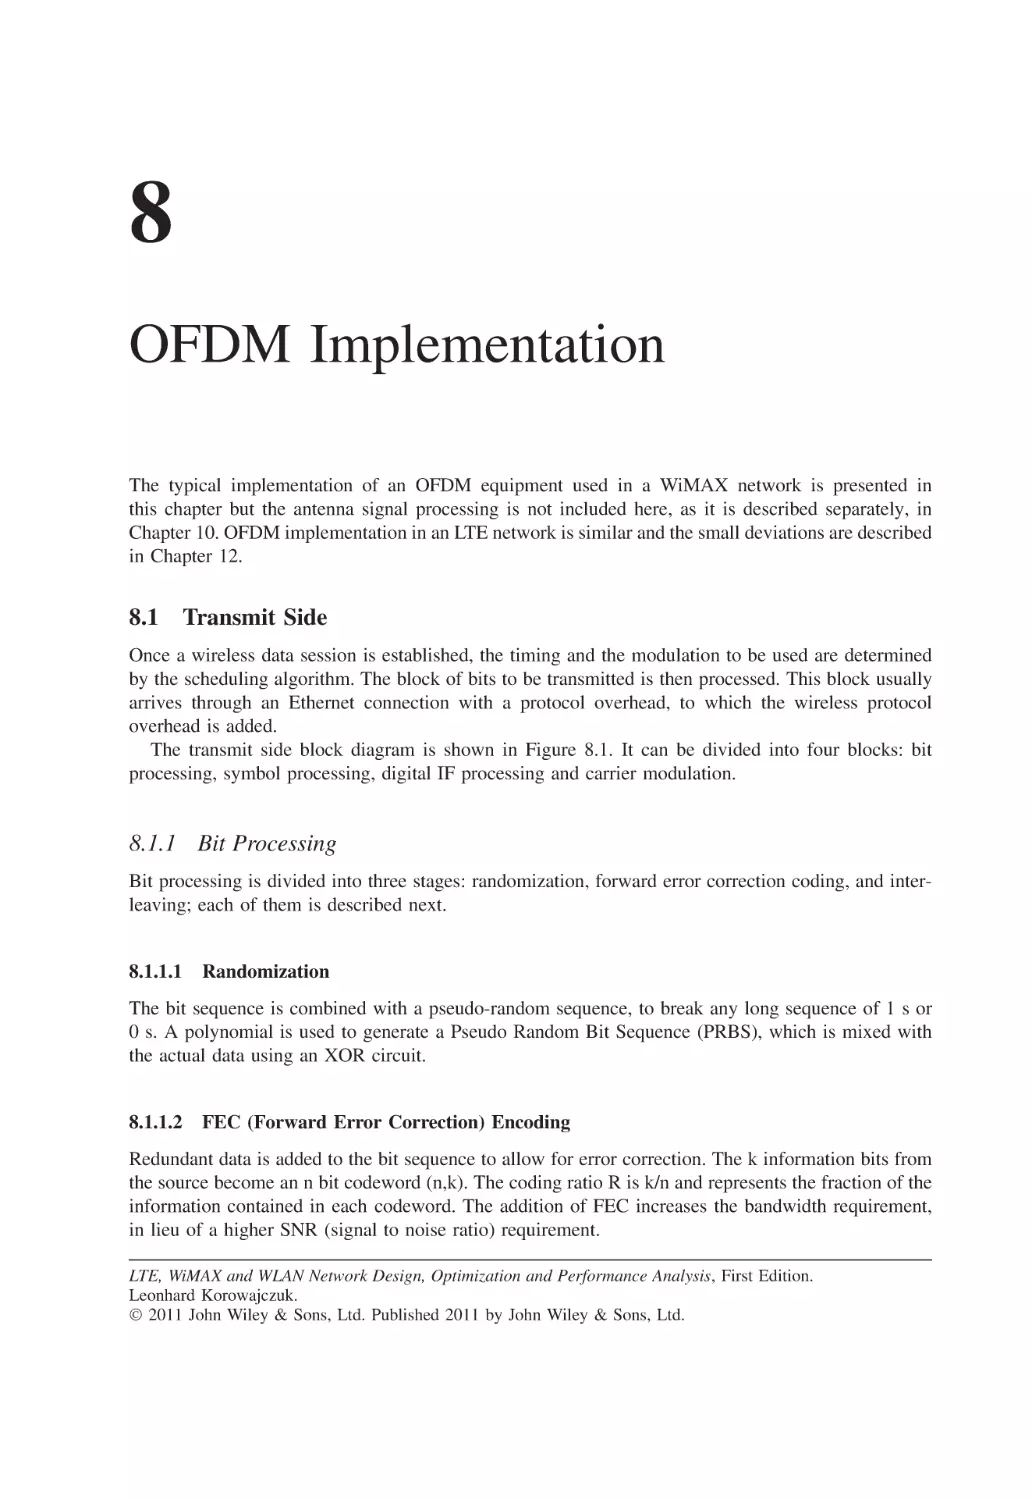 8 OFDM Implementation
8.1 Transmit Side
8.1.1 Bit Processing